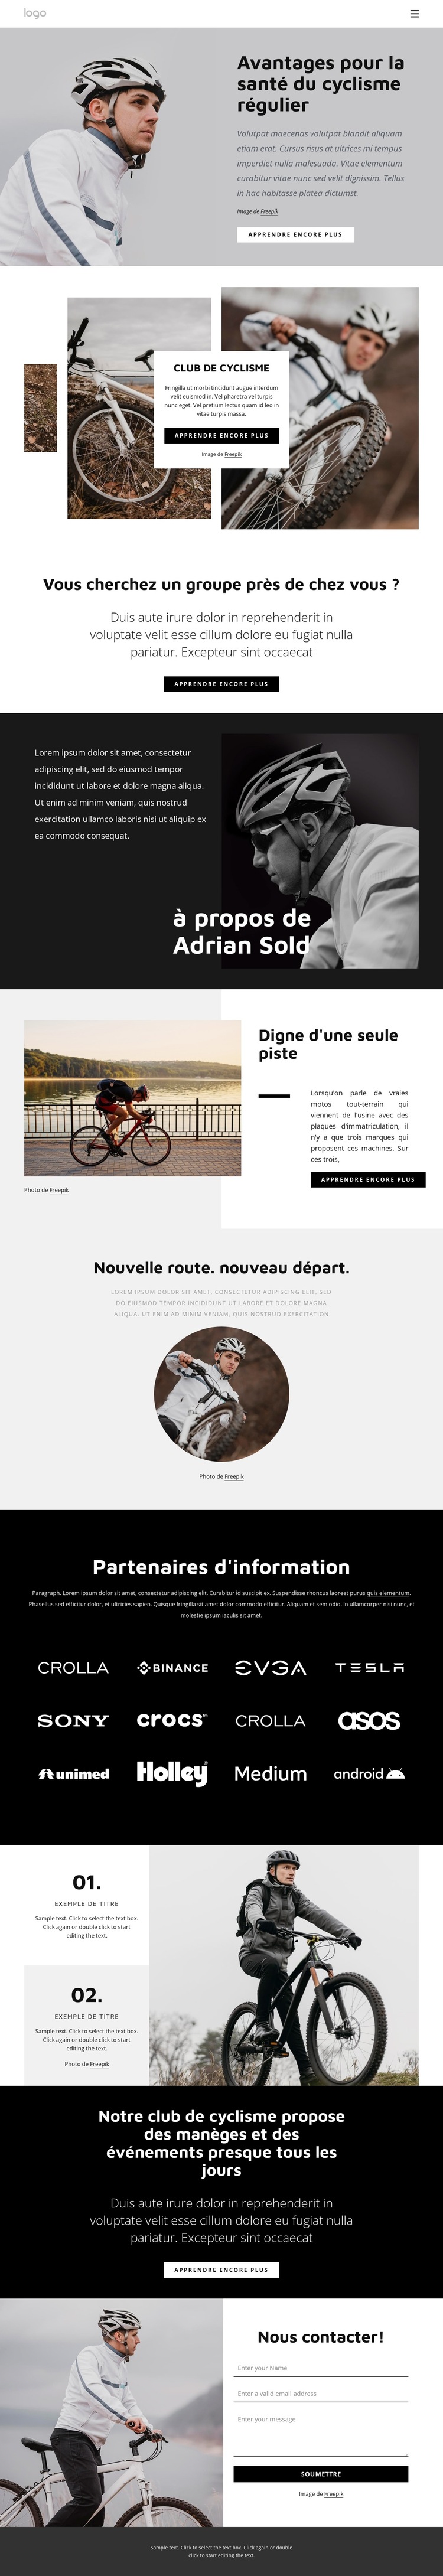 Avantages du cyclisme régulier Modèle de site Web